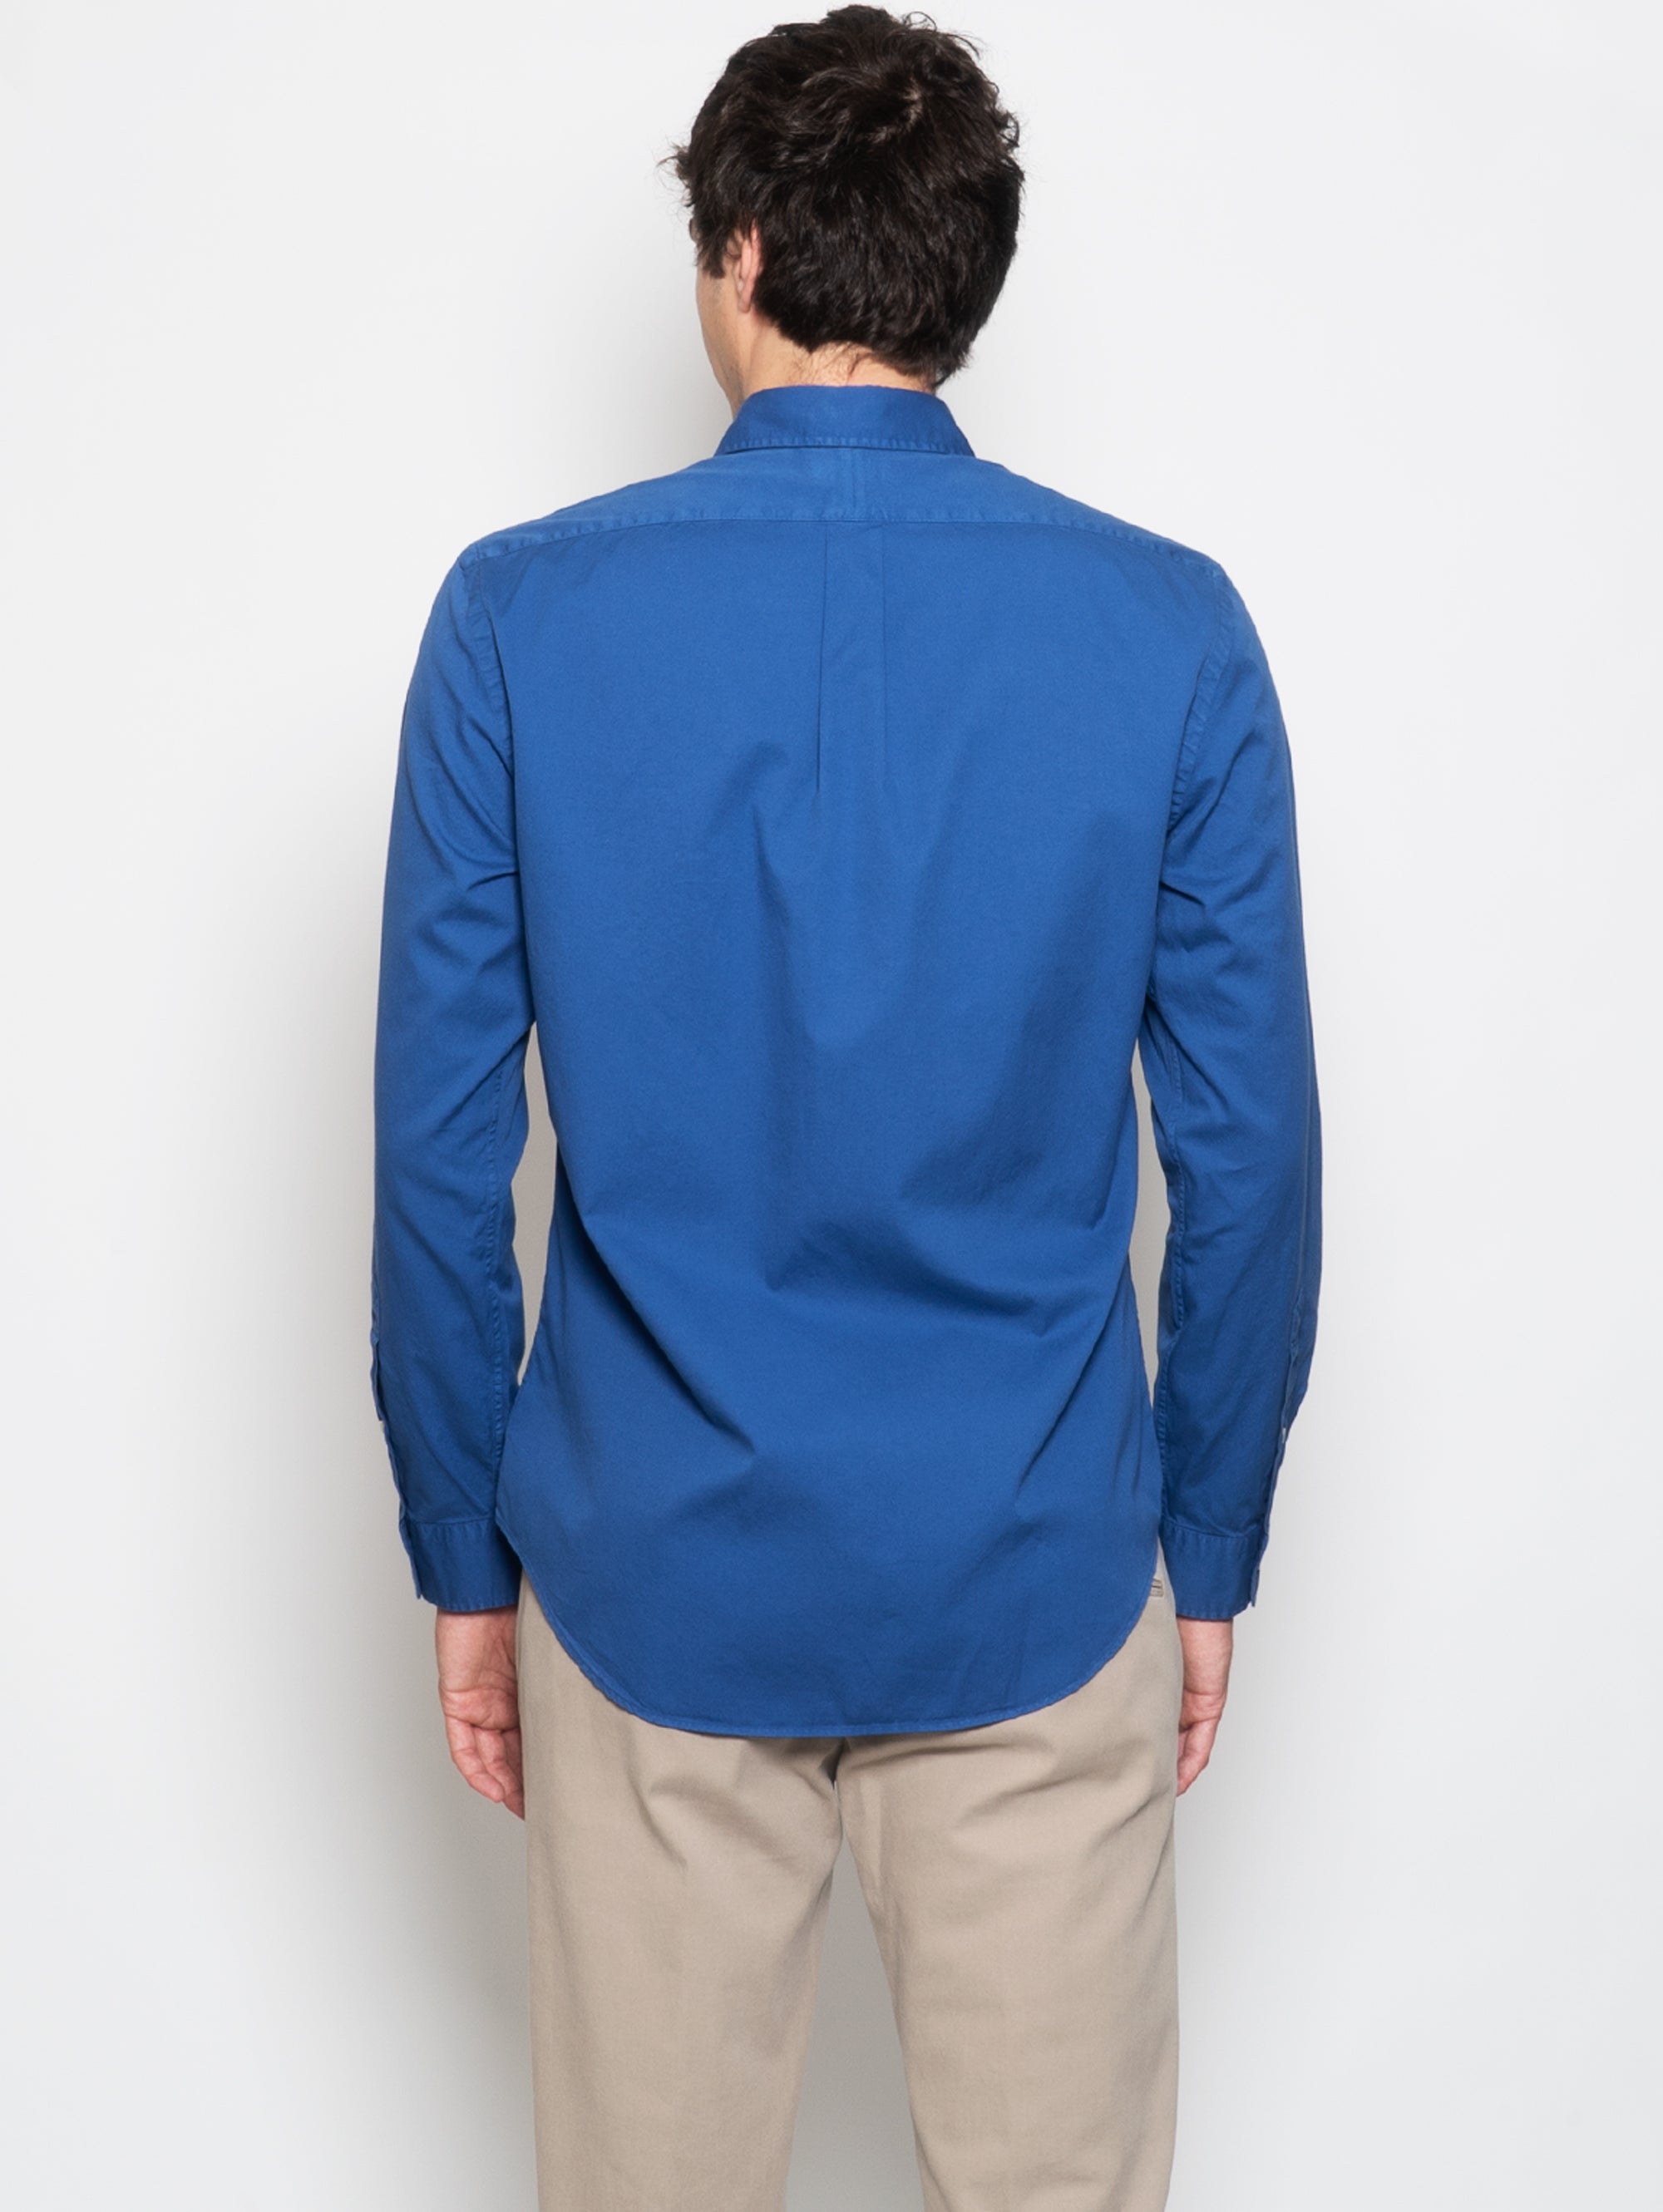 Schmal geschnittenes Hemd aus königsblauem Baumwoll-Twill